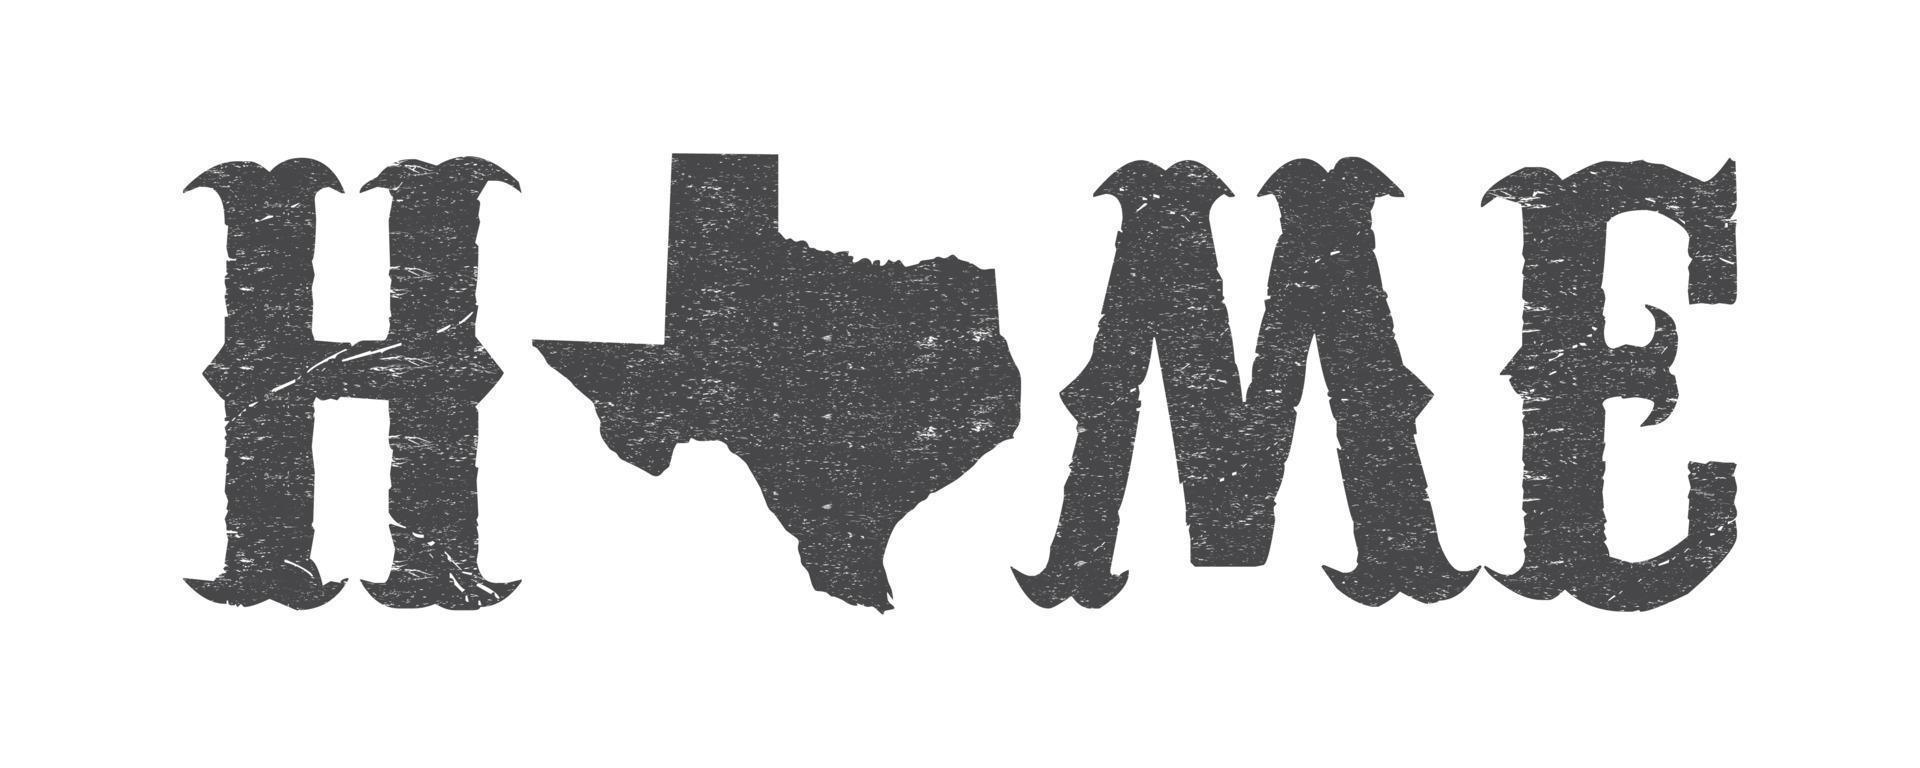 Texas è casa maglietta design con Texas carta geografica e grunge effetto. vettore